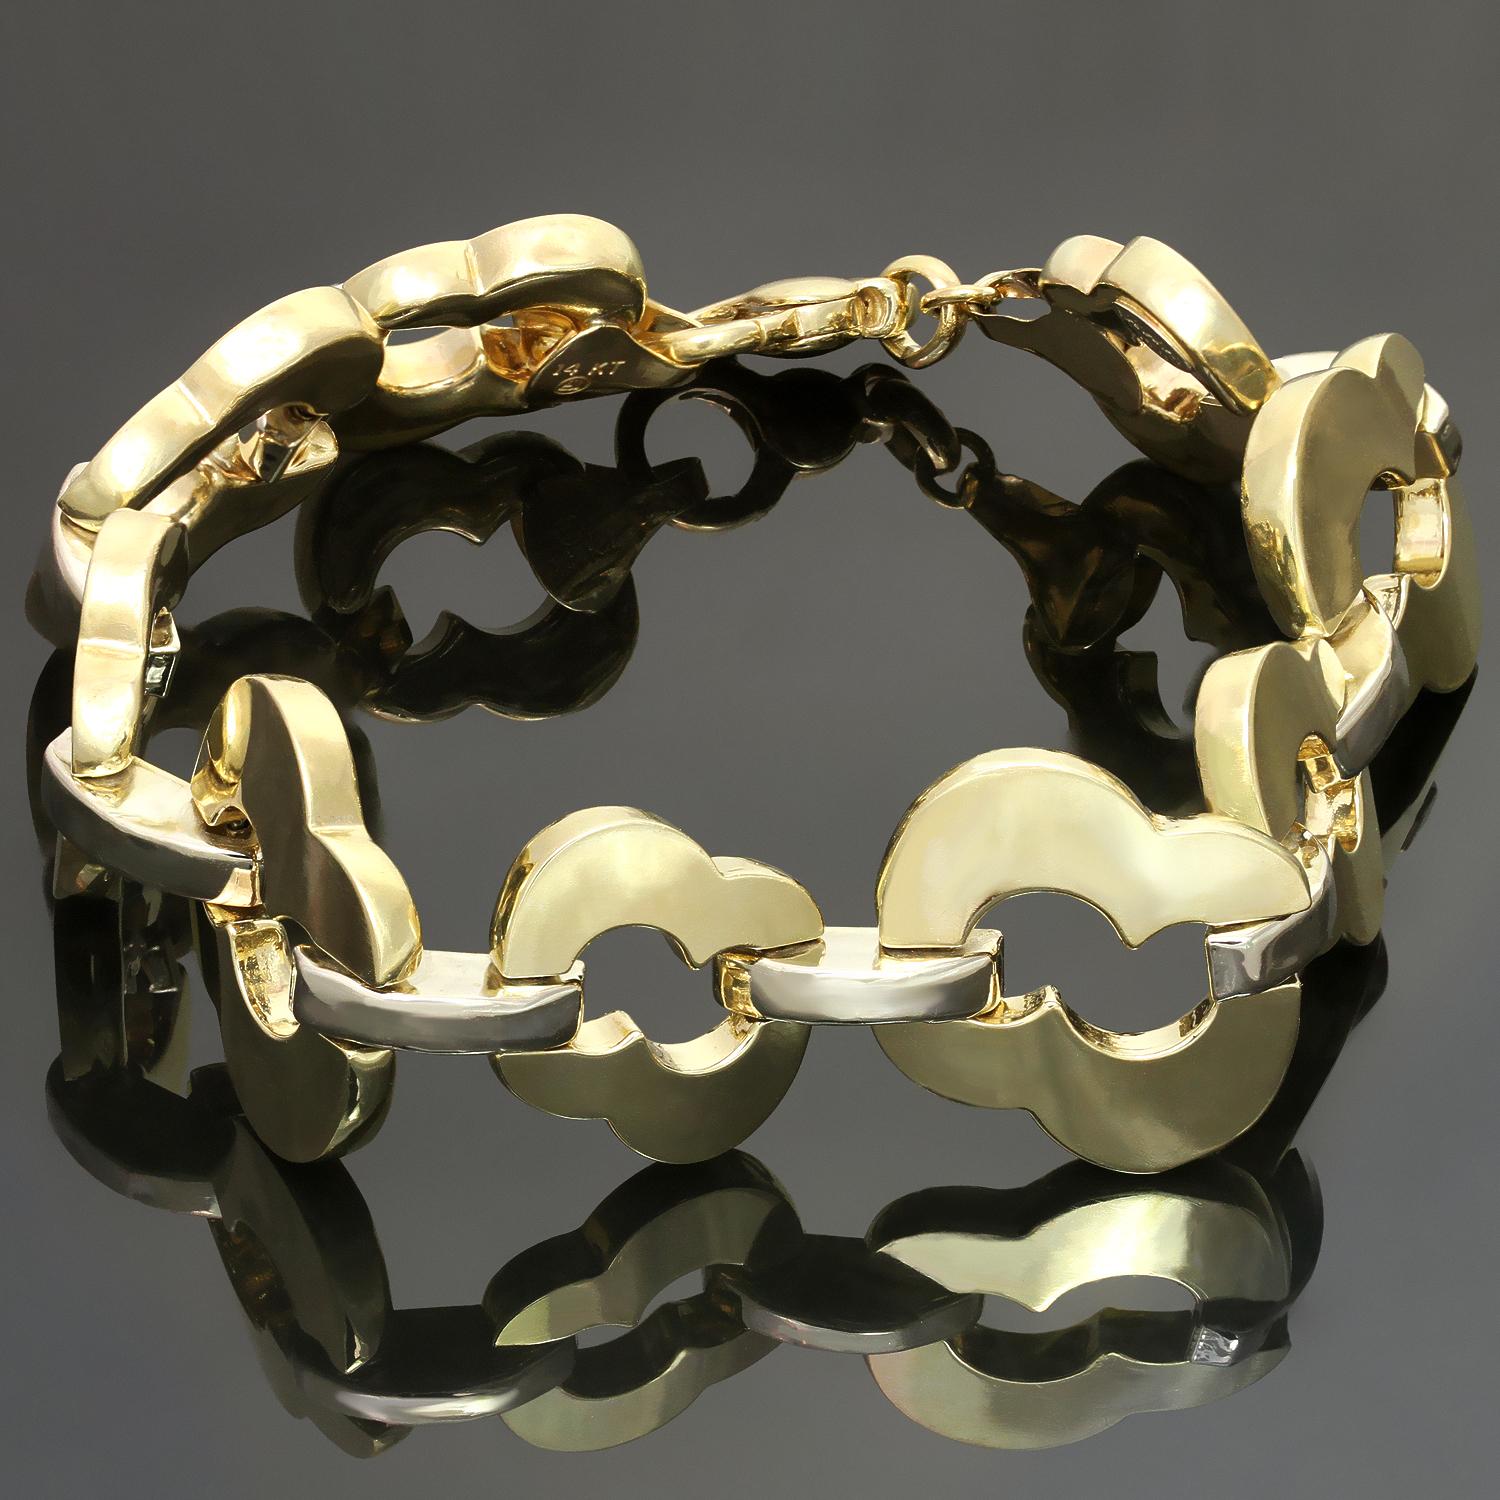 Ce bracelet chic Baraka présente des maillons géométriques façonnés en or blanc et jaune 14k. Fabriqué en Italie dans les années 1990. Dimensions : 0,82